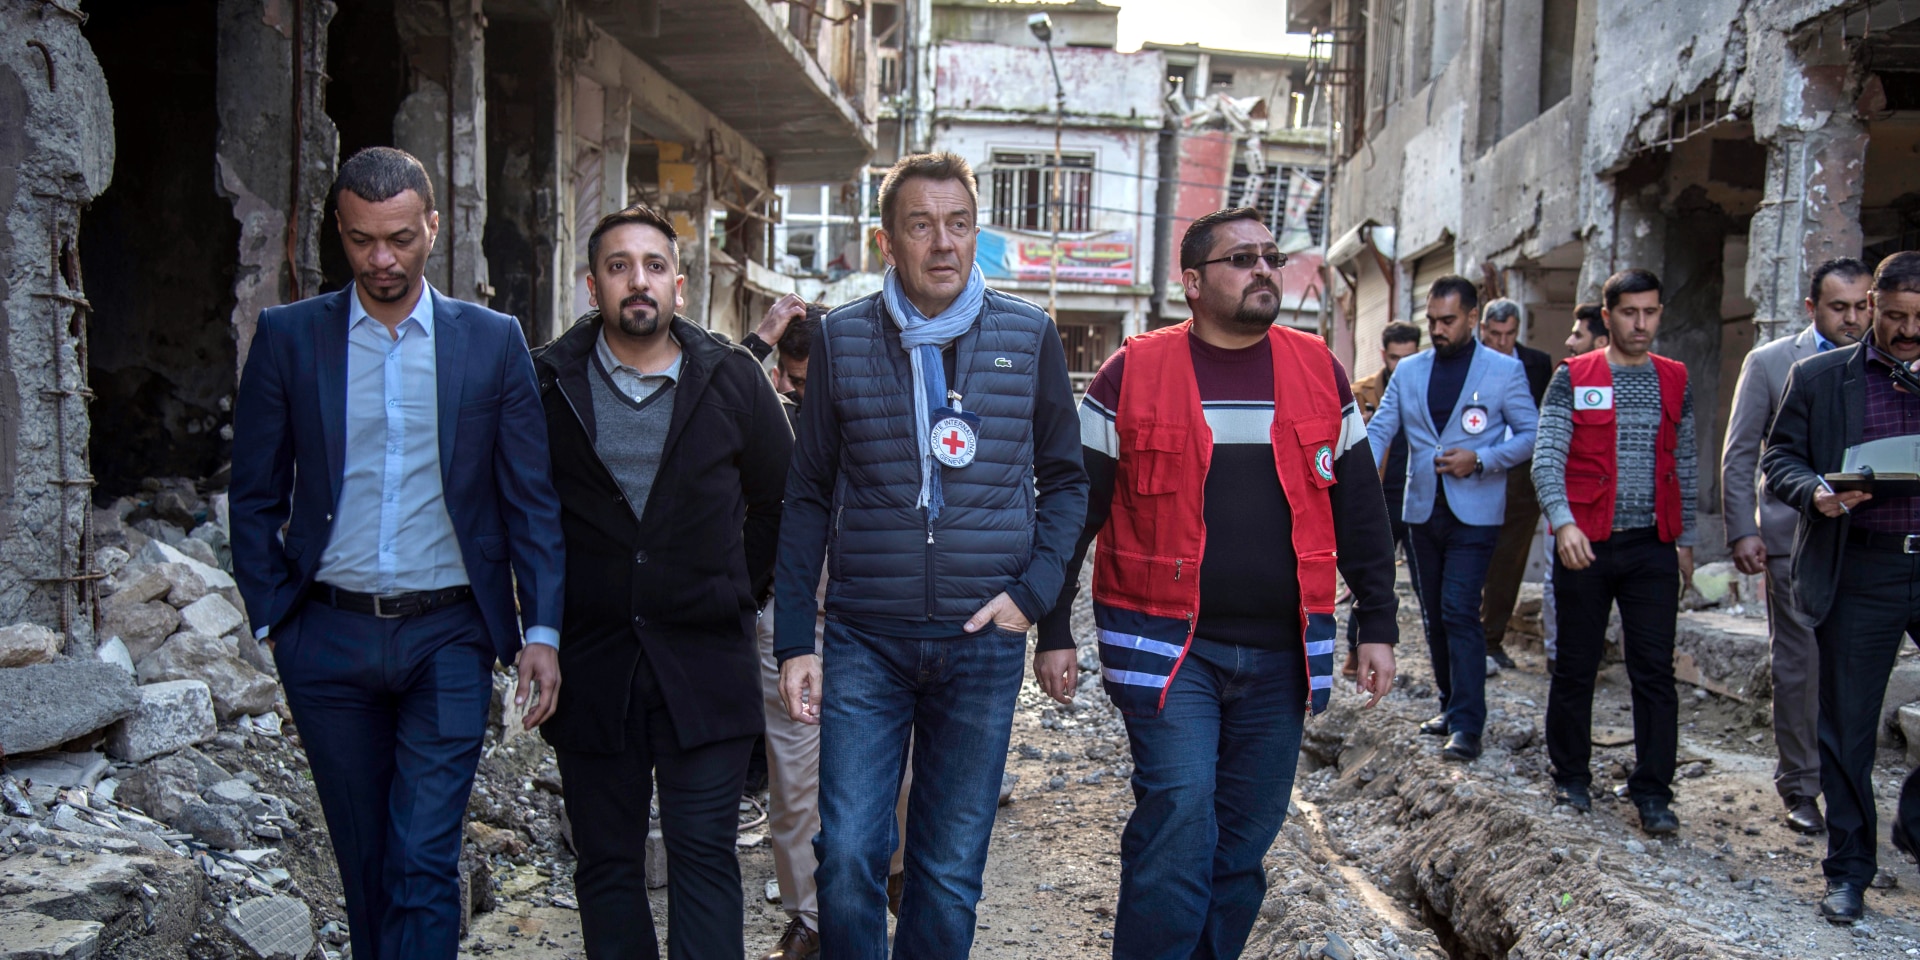 Peter Maurer besichtigt mit Mitarbeitenden des IKRK und des Roten Halbmondes ein von Zerstörung geprägtes Viertel.